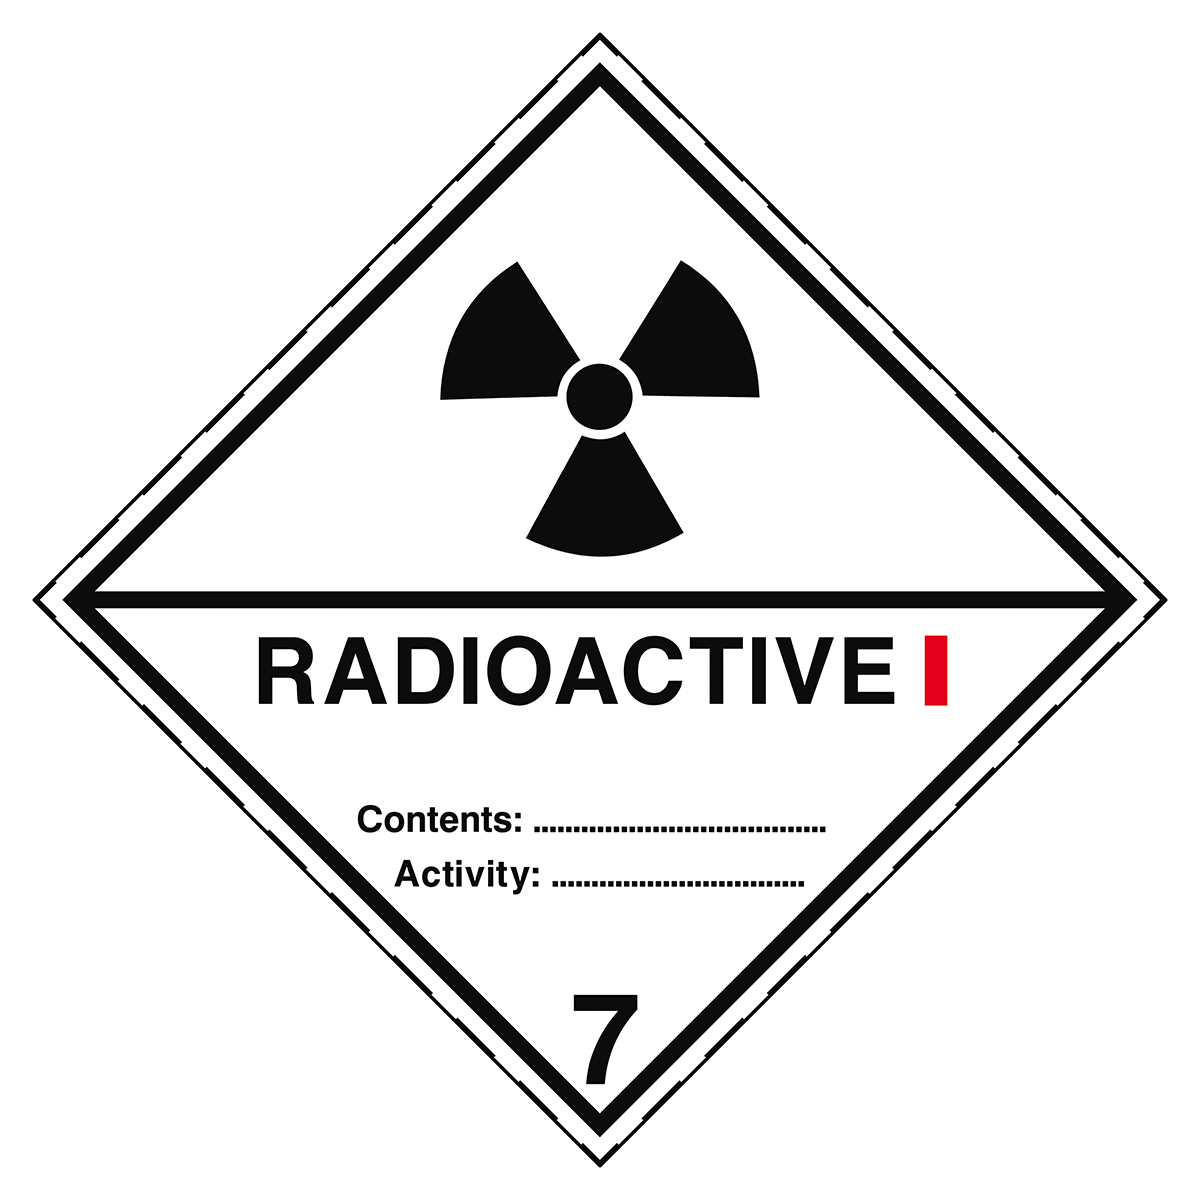 BRADY Aufkleber für den Transport gefährlicher Güter - Radioactive Stoffe 7A ADR 7A I - 200*200-B754